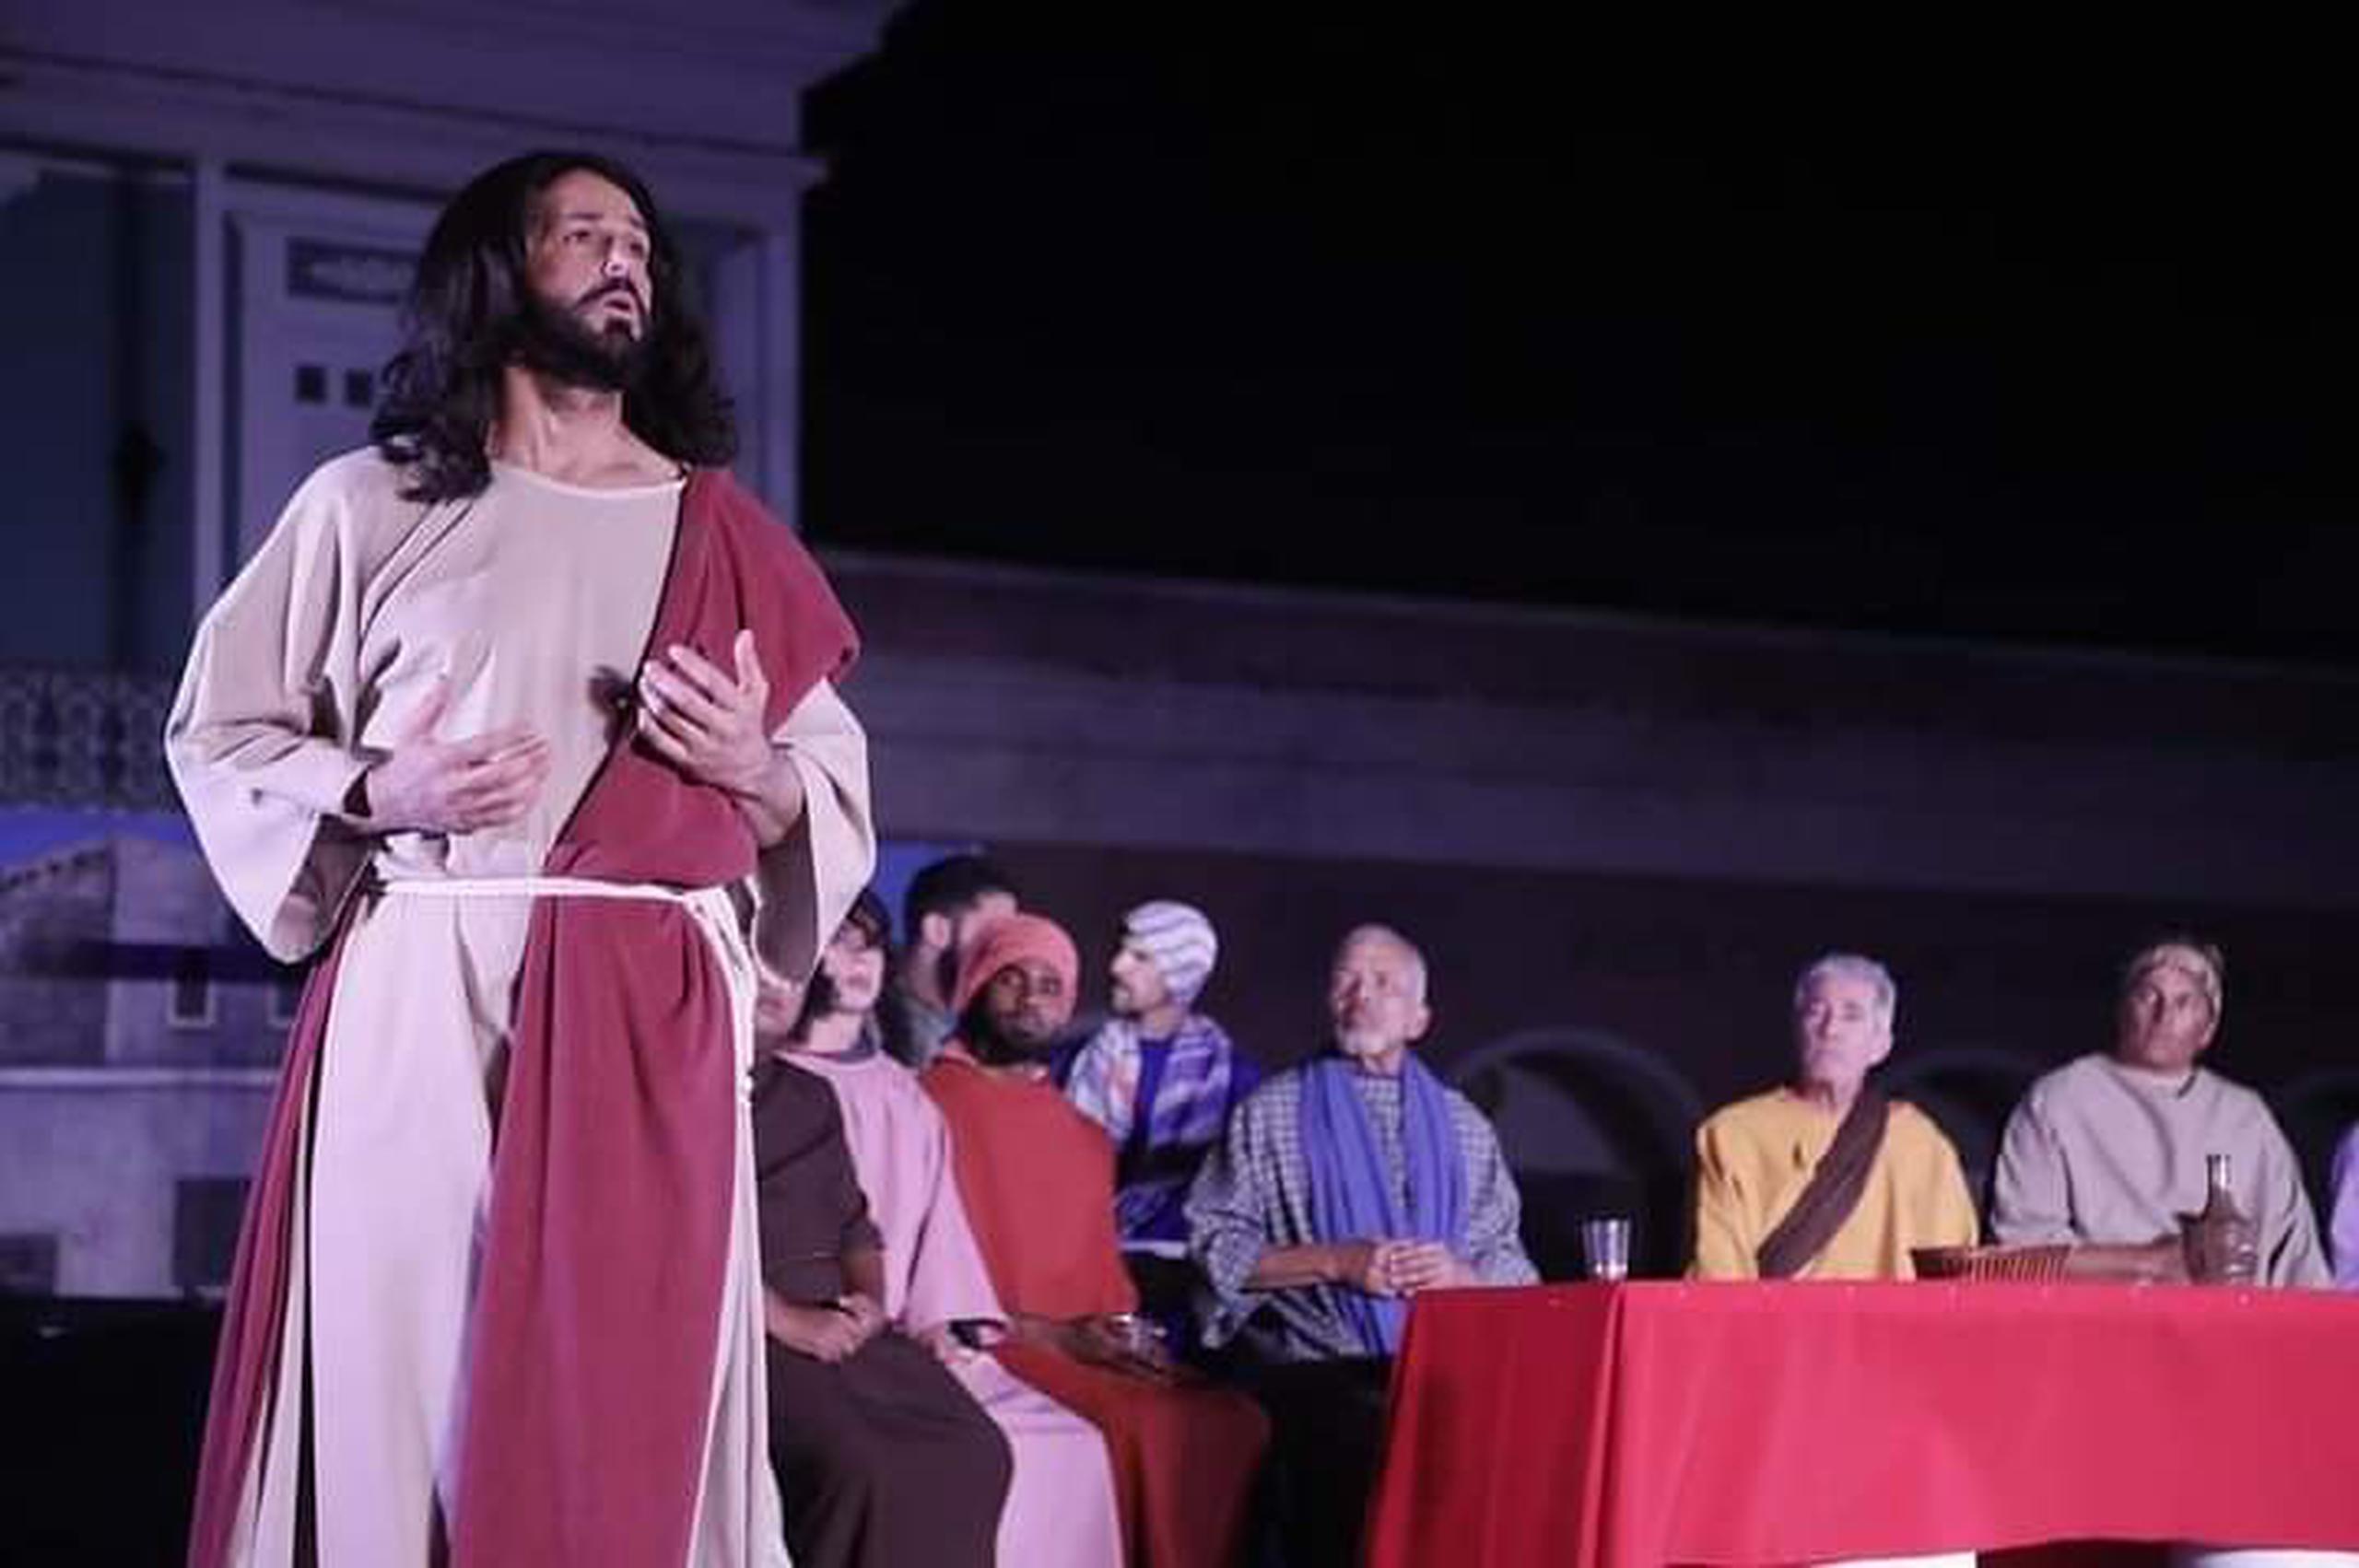 El actor Jonathan Cardenales, en el papel de Jesús, junto a Cristina Soler, y un grupo de compañeros artistas, recrearon desde el pasado miércoles “La Pasión de Jesucristo”.